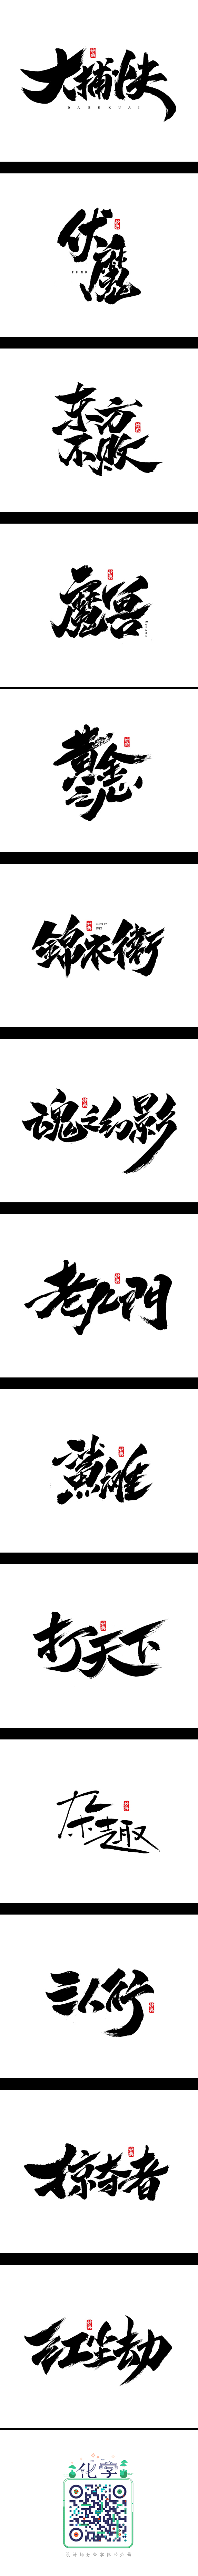 书法字记 | 江湖_字体传奇网-中国首个...